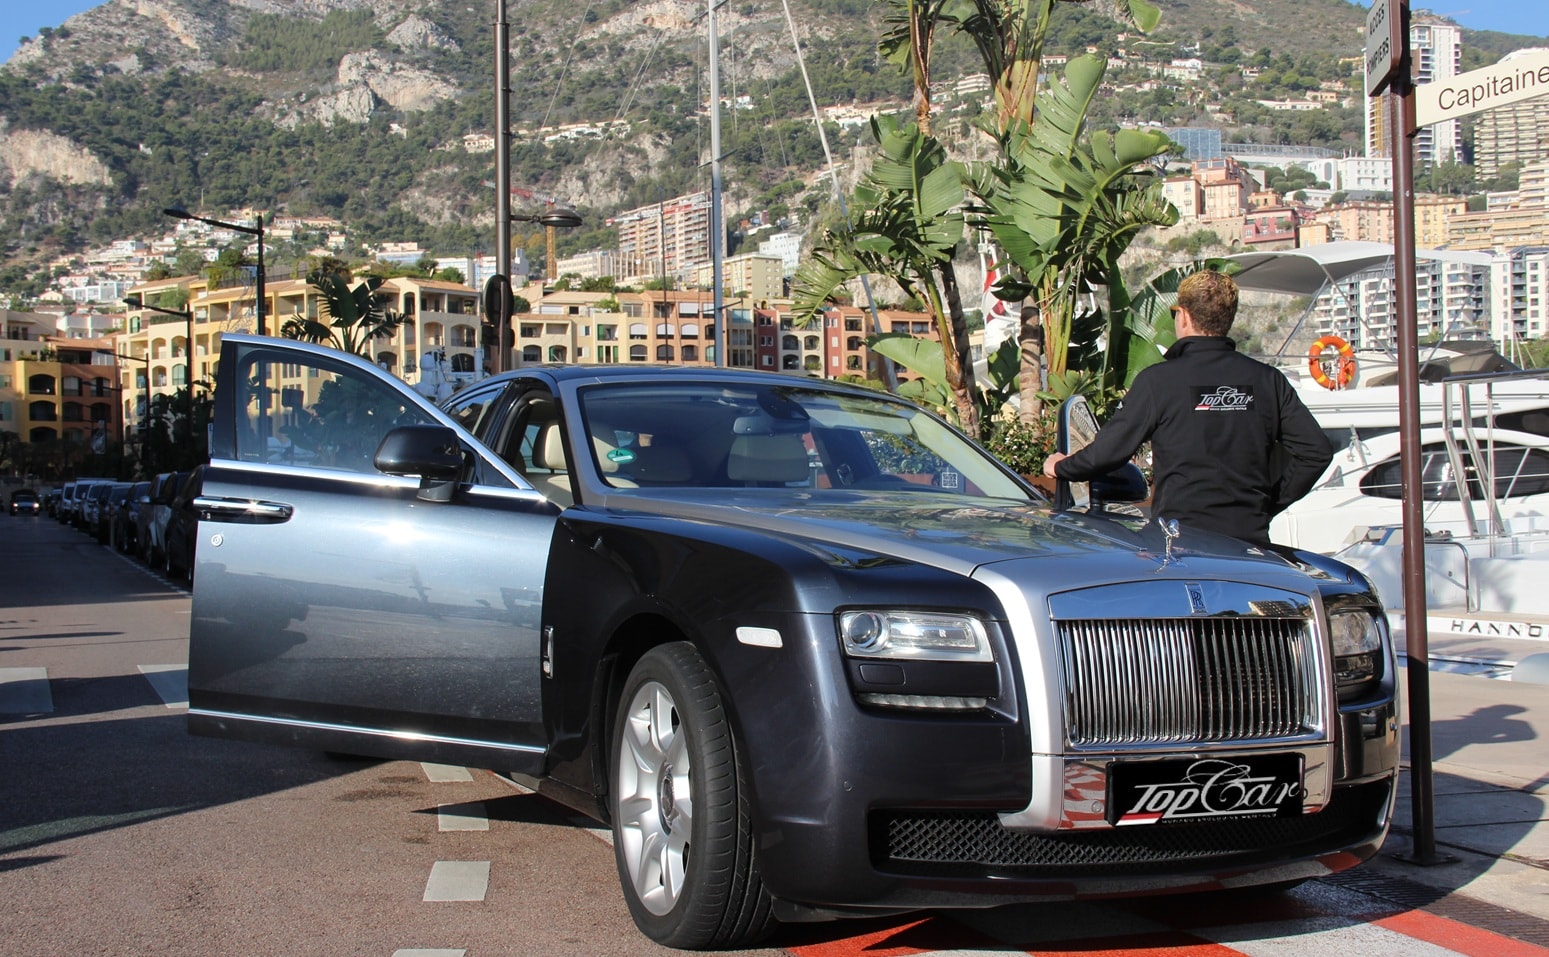 Location de voiture avec chauffeur sur la Côte d'Azur, France. Location de Rolls Royce à Monaco, Nice, Cannes, Saint-Tropez avec TOP CAR MONACO. Voitures de prestige pas cher!